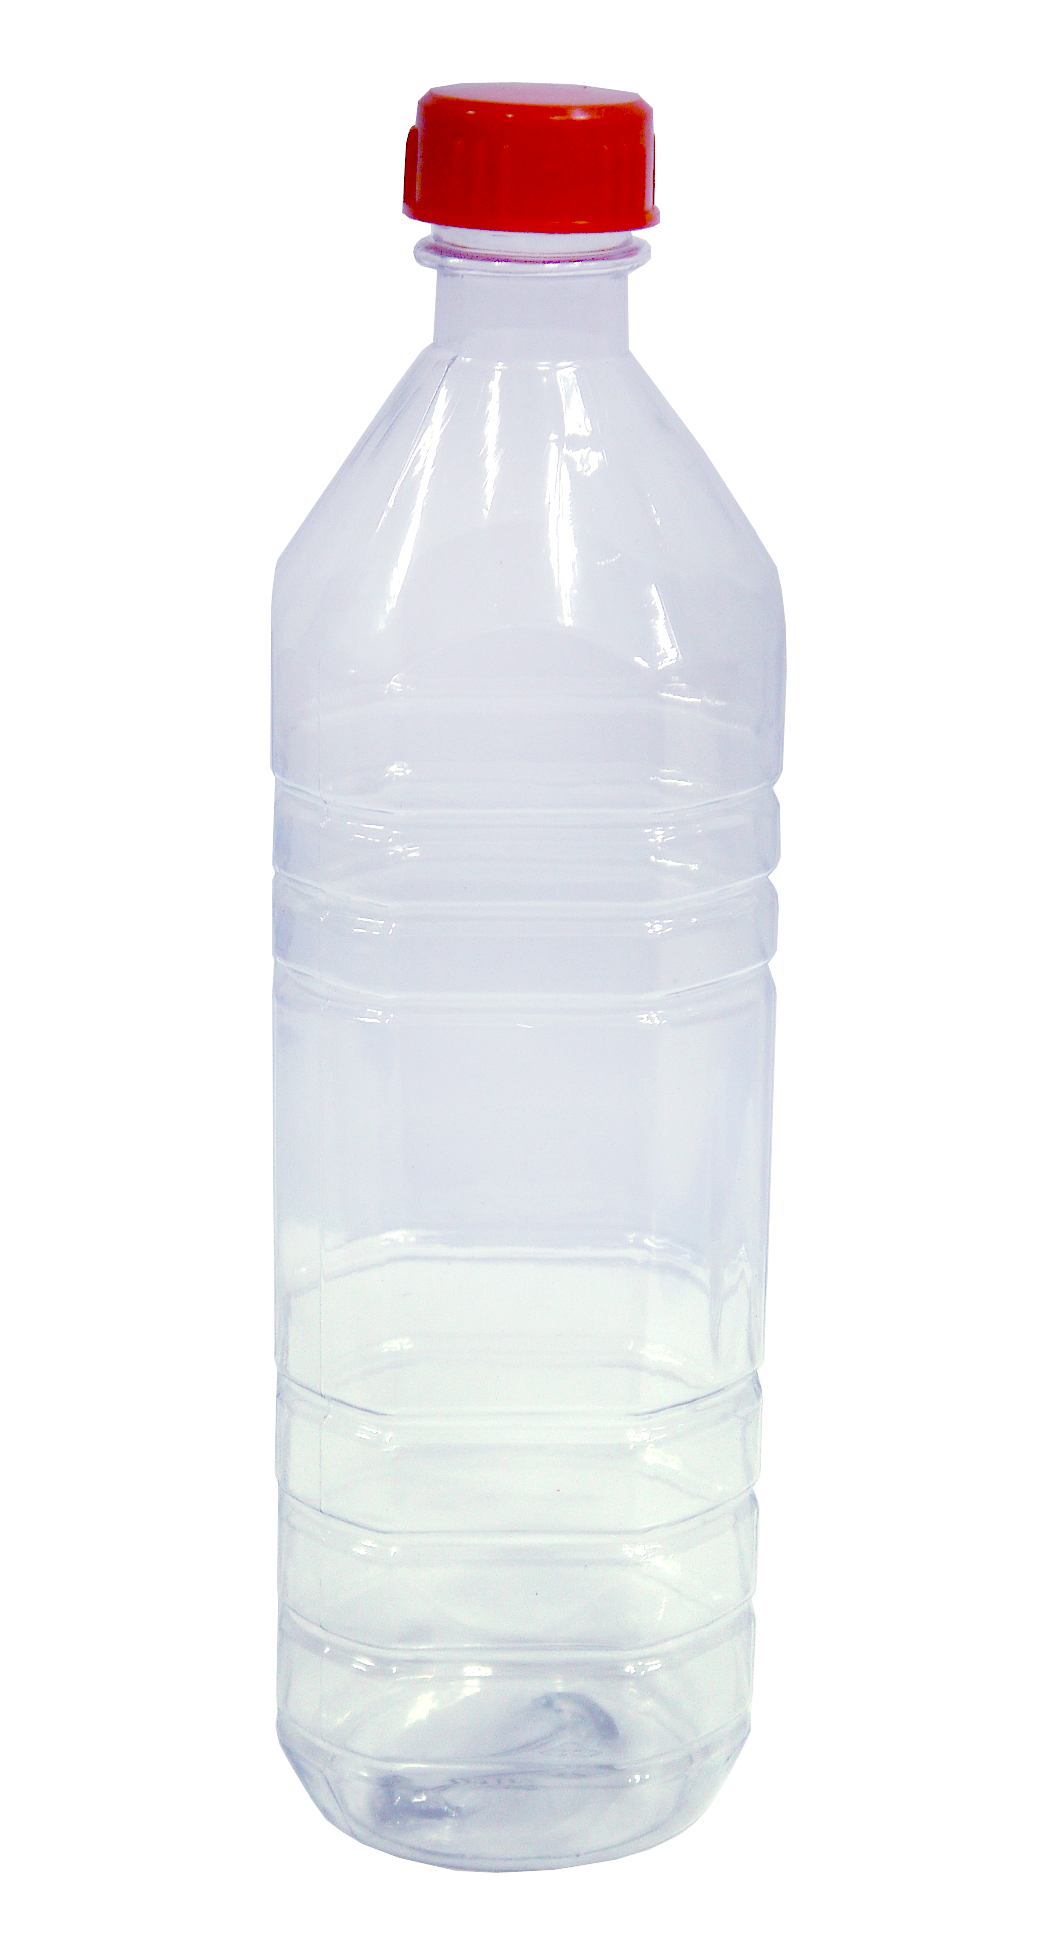 2000CC果汁瓶